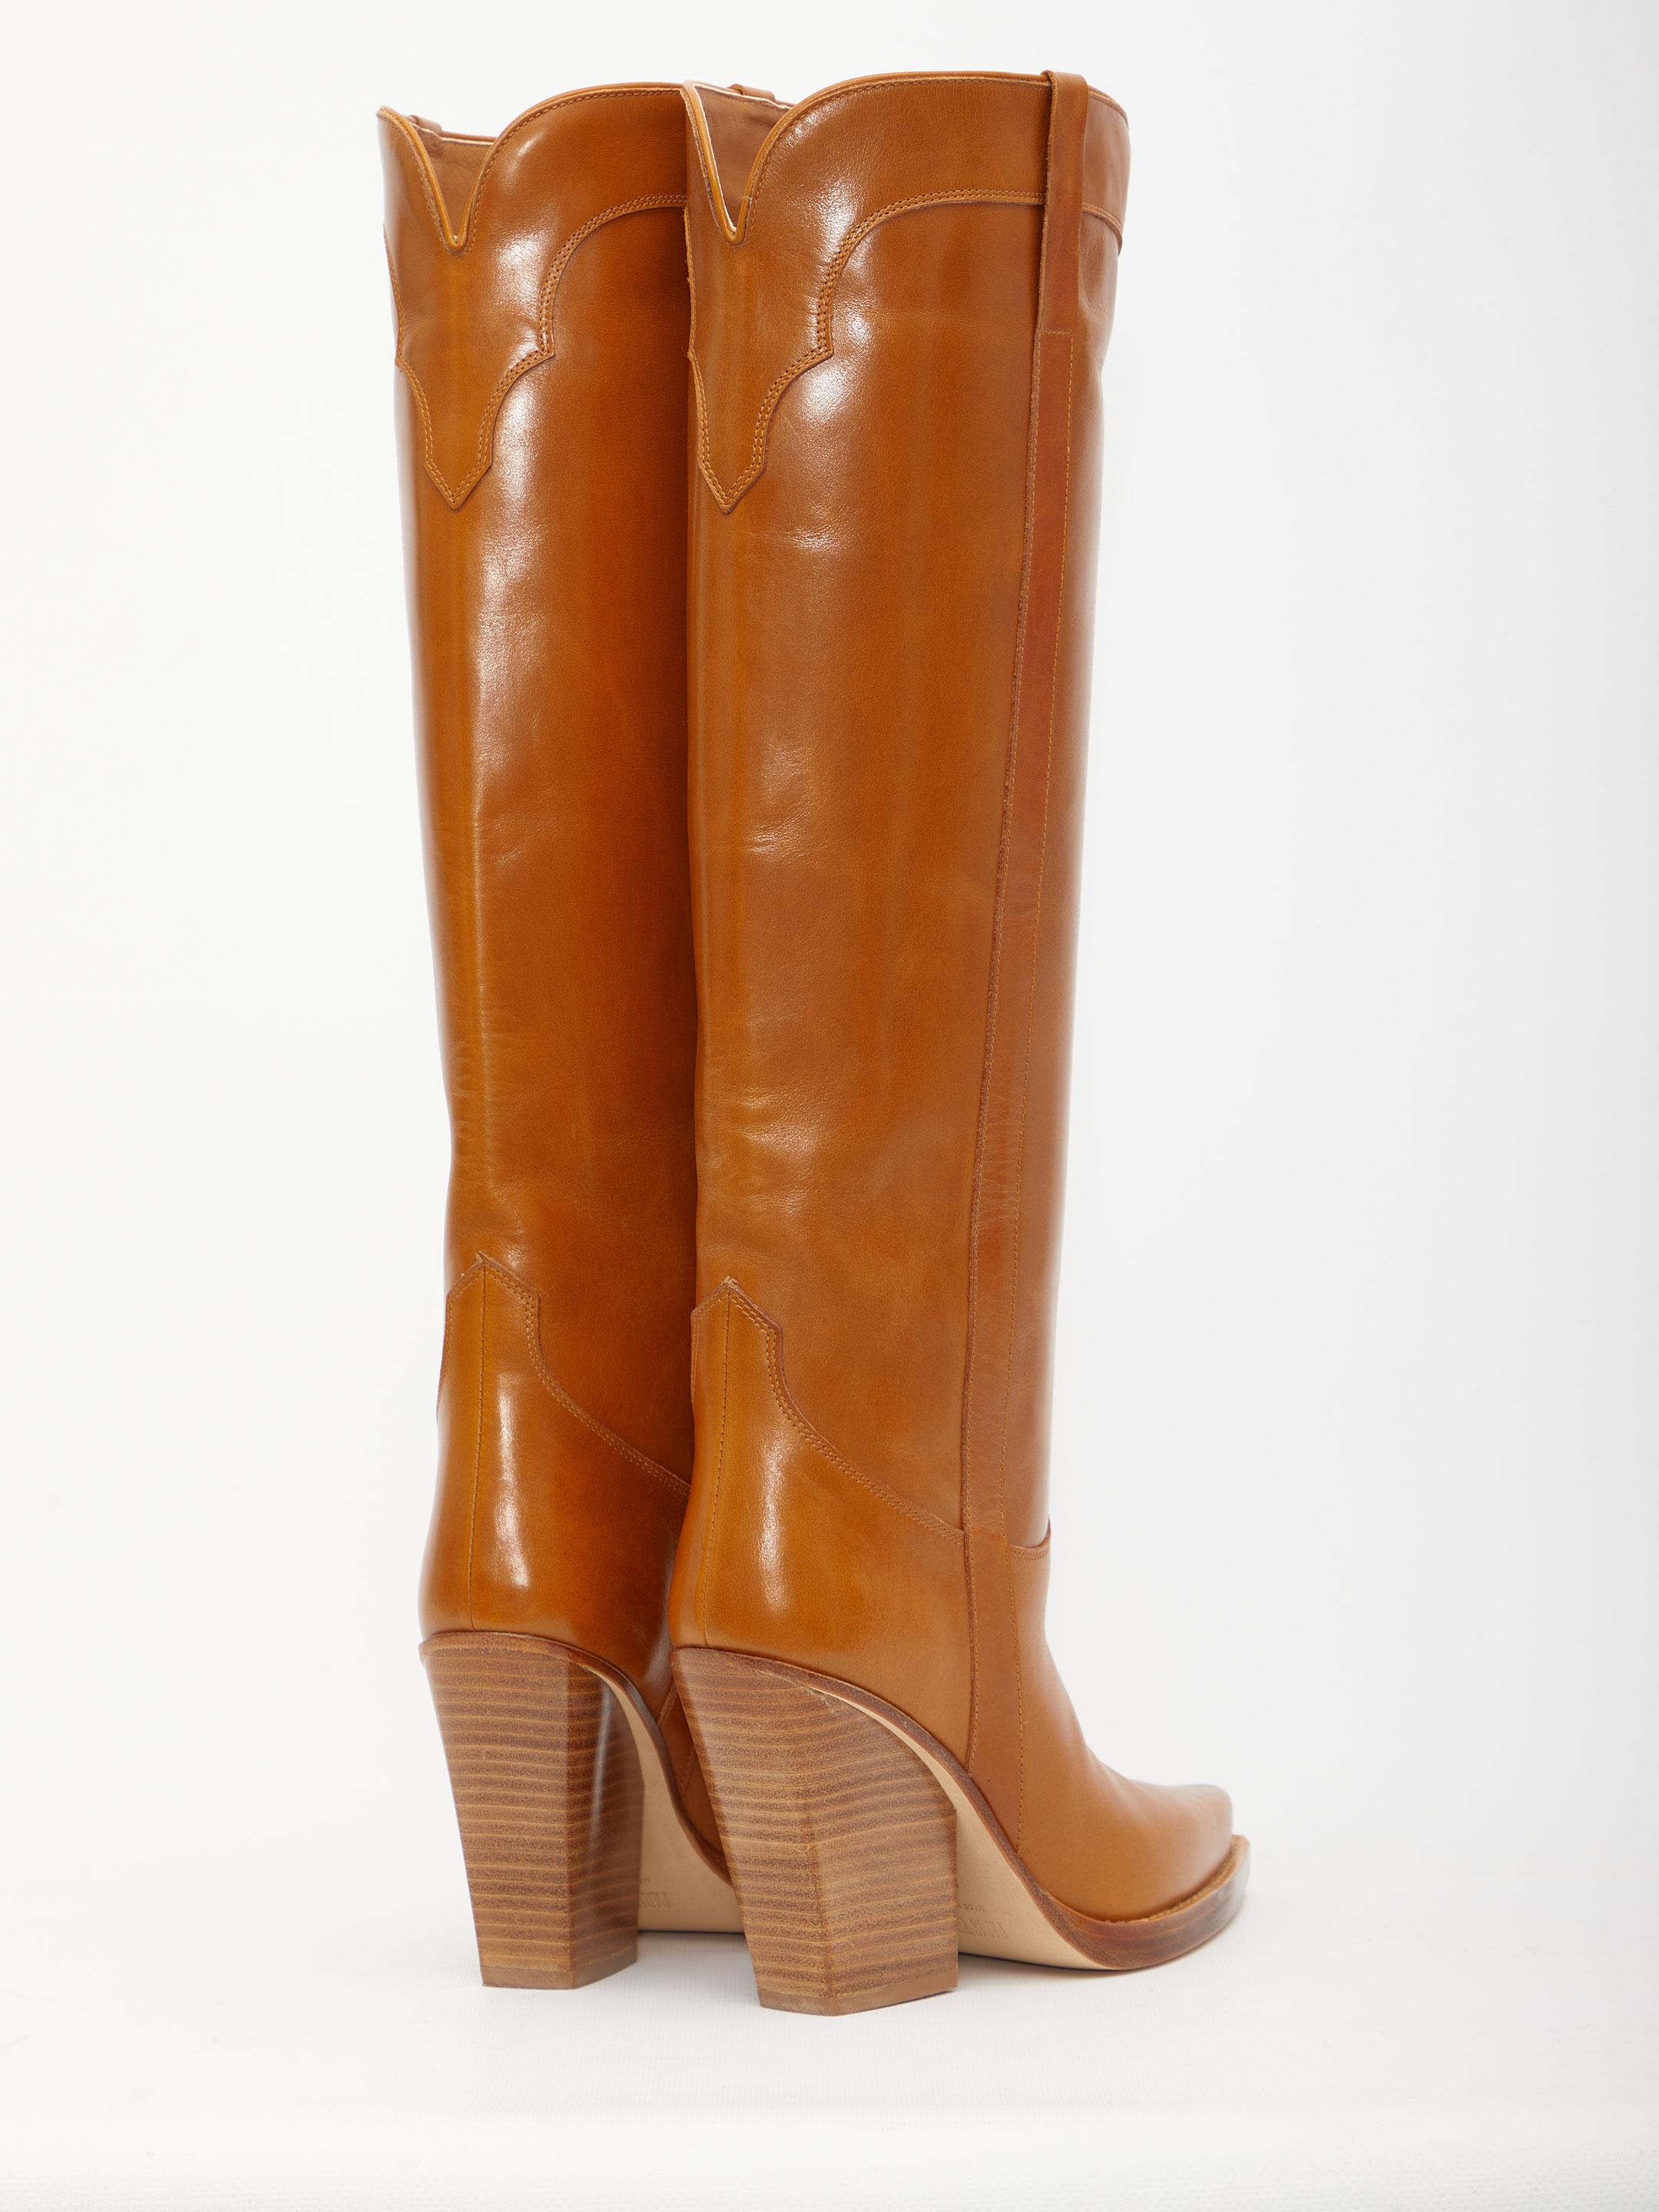 Paris Texas Leather El Dorado Boots in Brown - Save 13% | Lyst